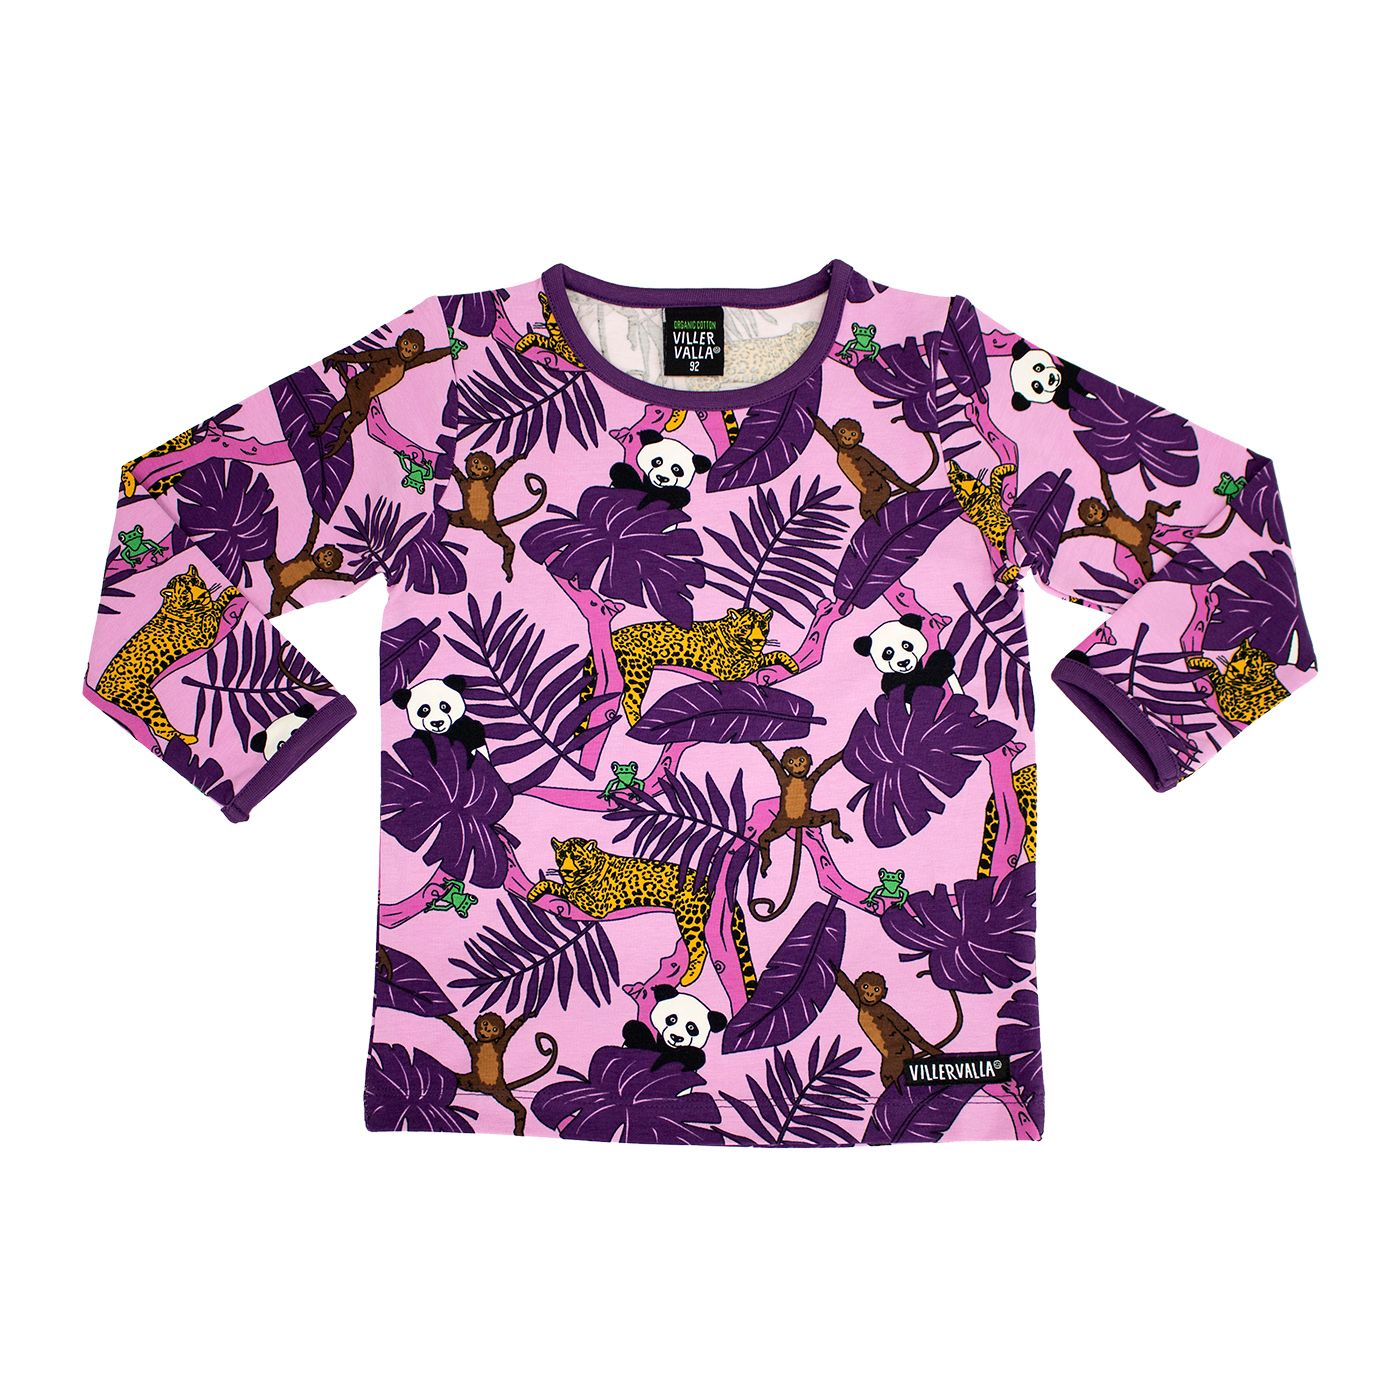 Jungle Long Sleeve Shirt - Plum - 1 Left Size 11-12 years-Villervalla-Modern Rascals